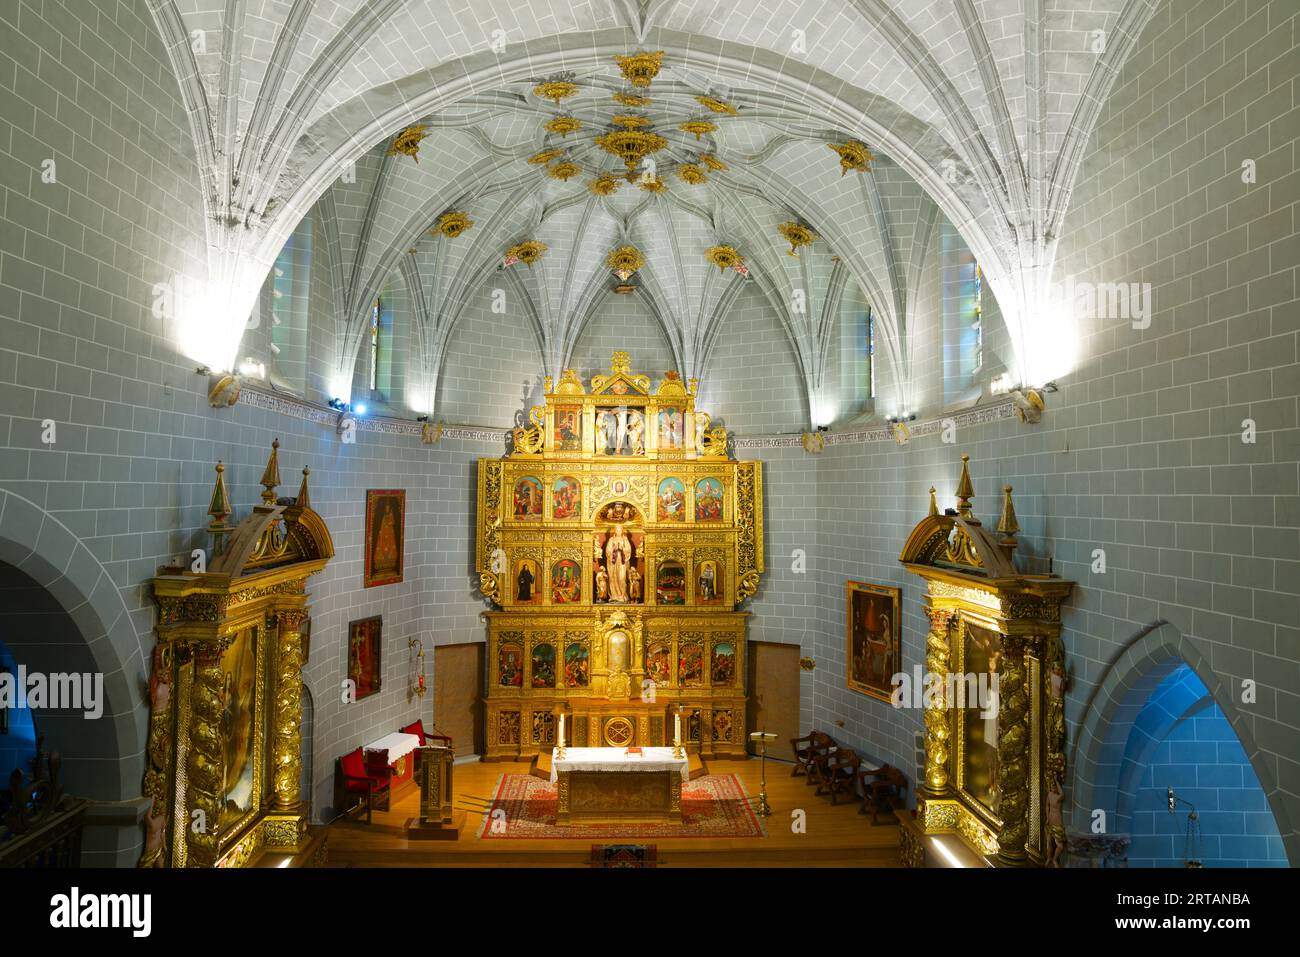 Das Innere der Kirche unserer Lieben Frau von der Himmelfahrt in Sallent de Gallego, Provinz Huesca in den Pyrenäen. Stockfoto